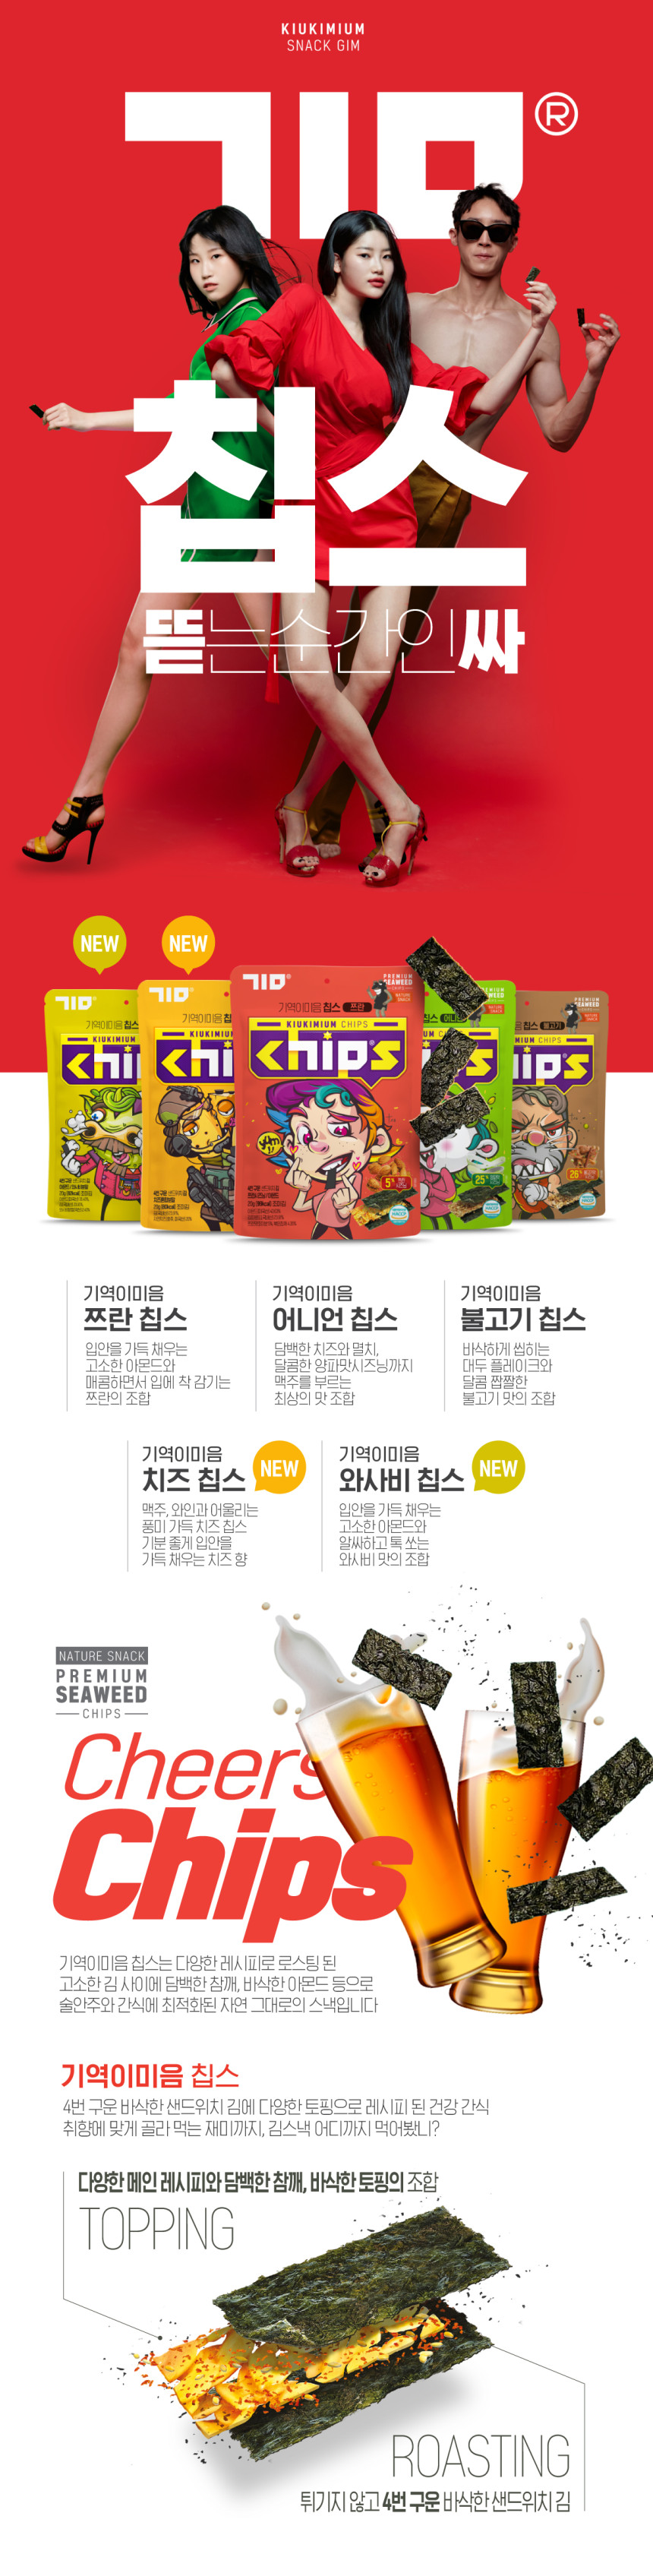 chips_detail_002_170102.jpg